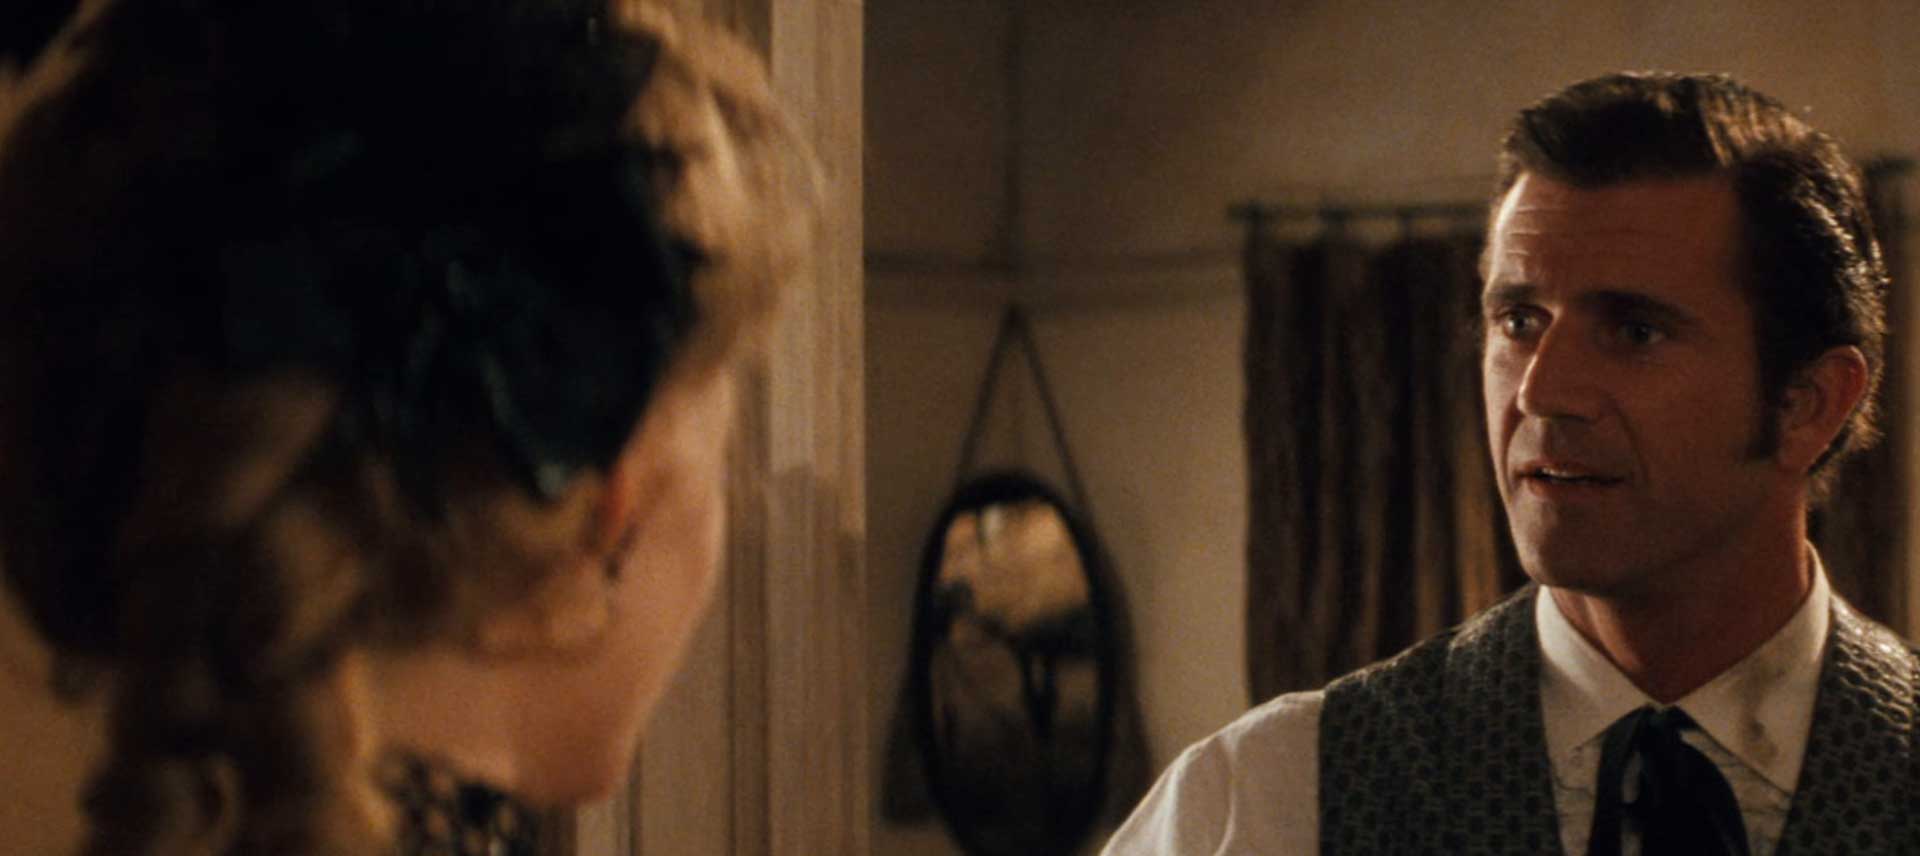 چهره پرسشگر مل گیبسون در فیلم Maverick ریچارد دانر مقابل شخصیت زن داخل خانه